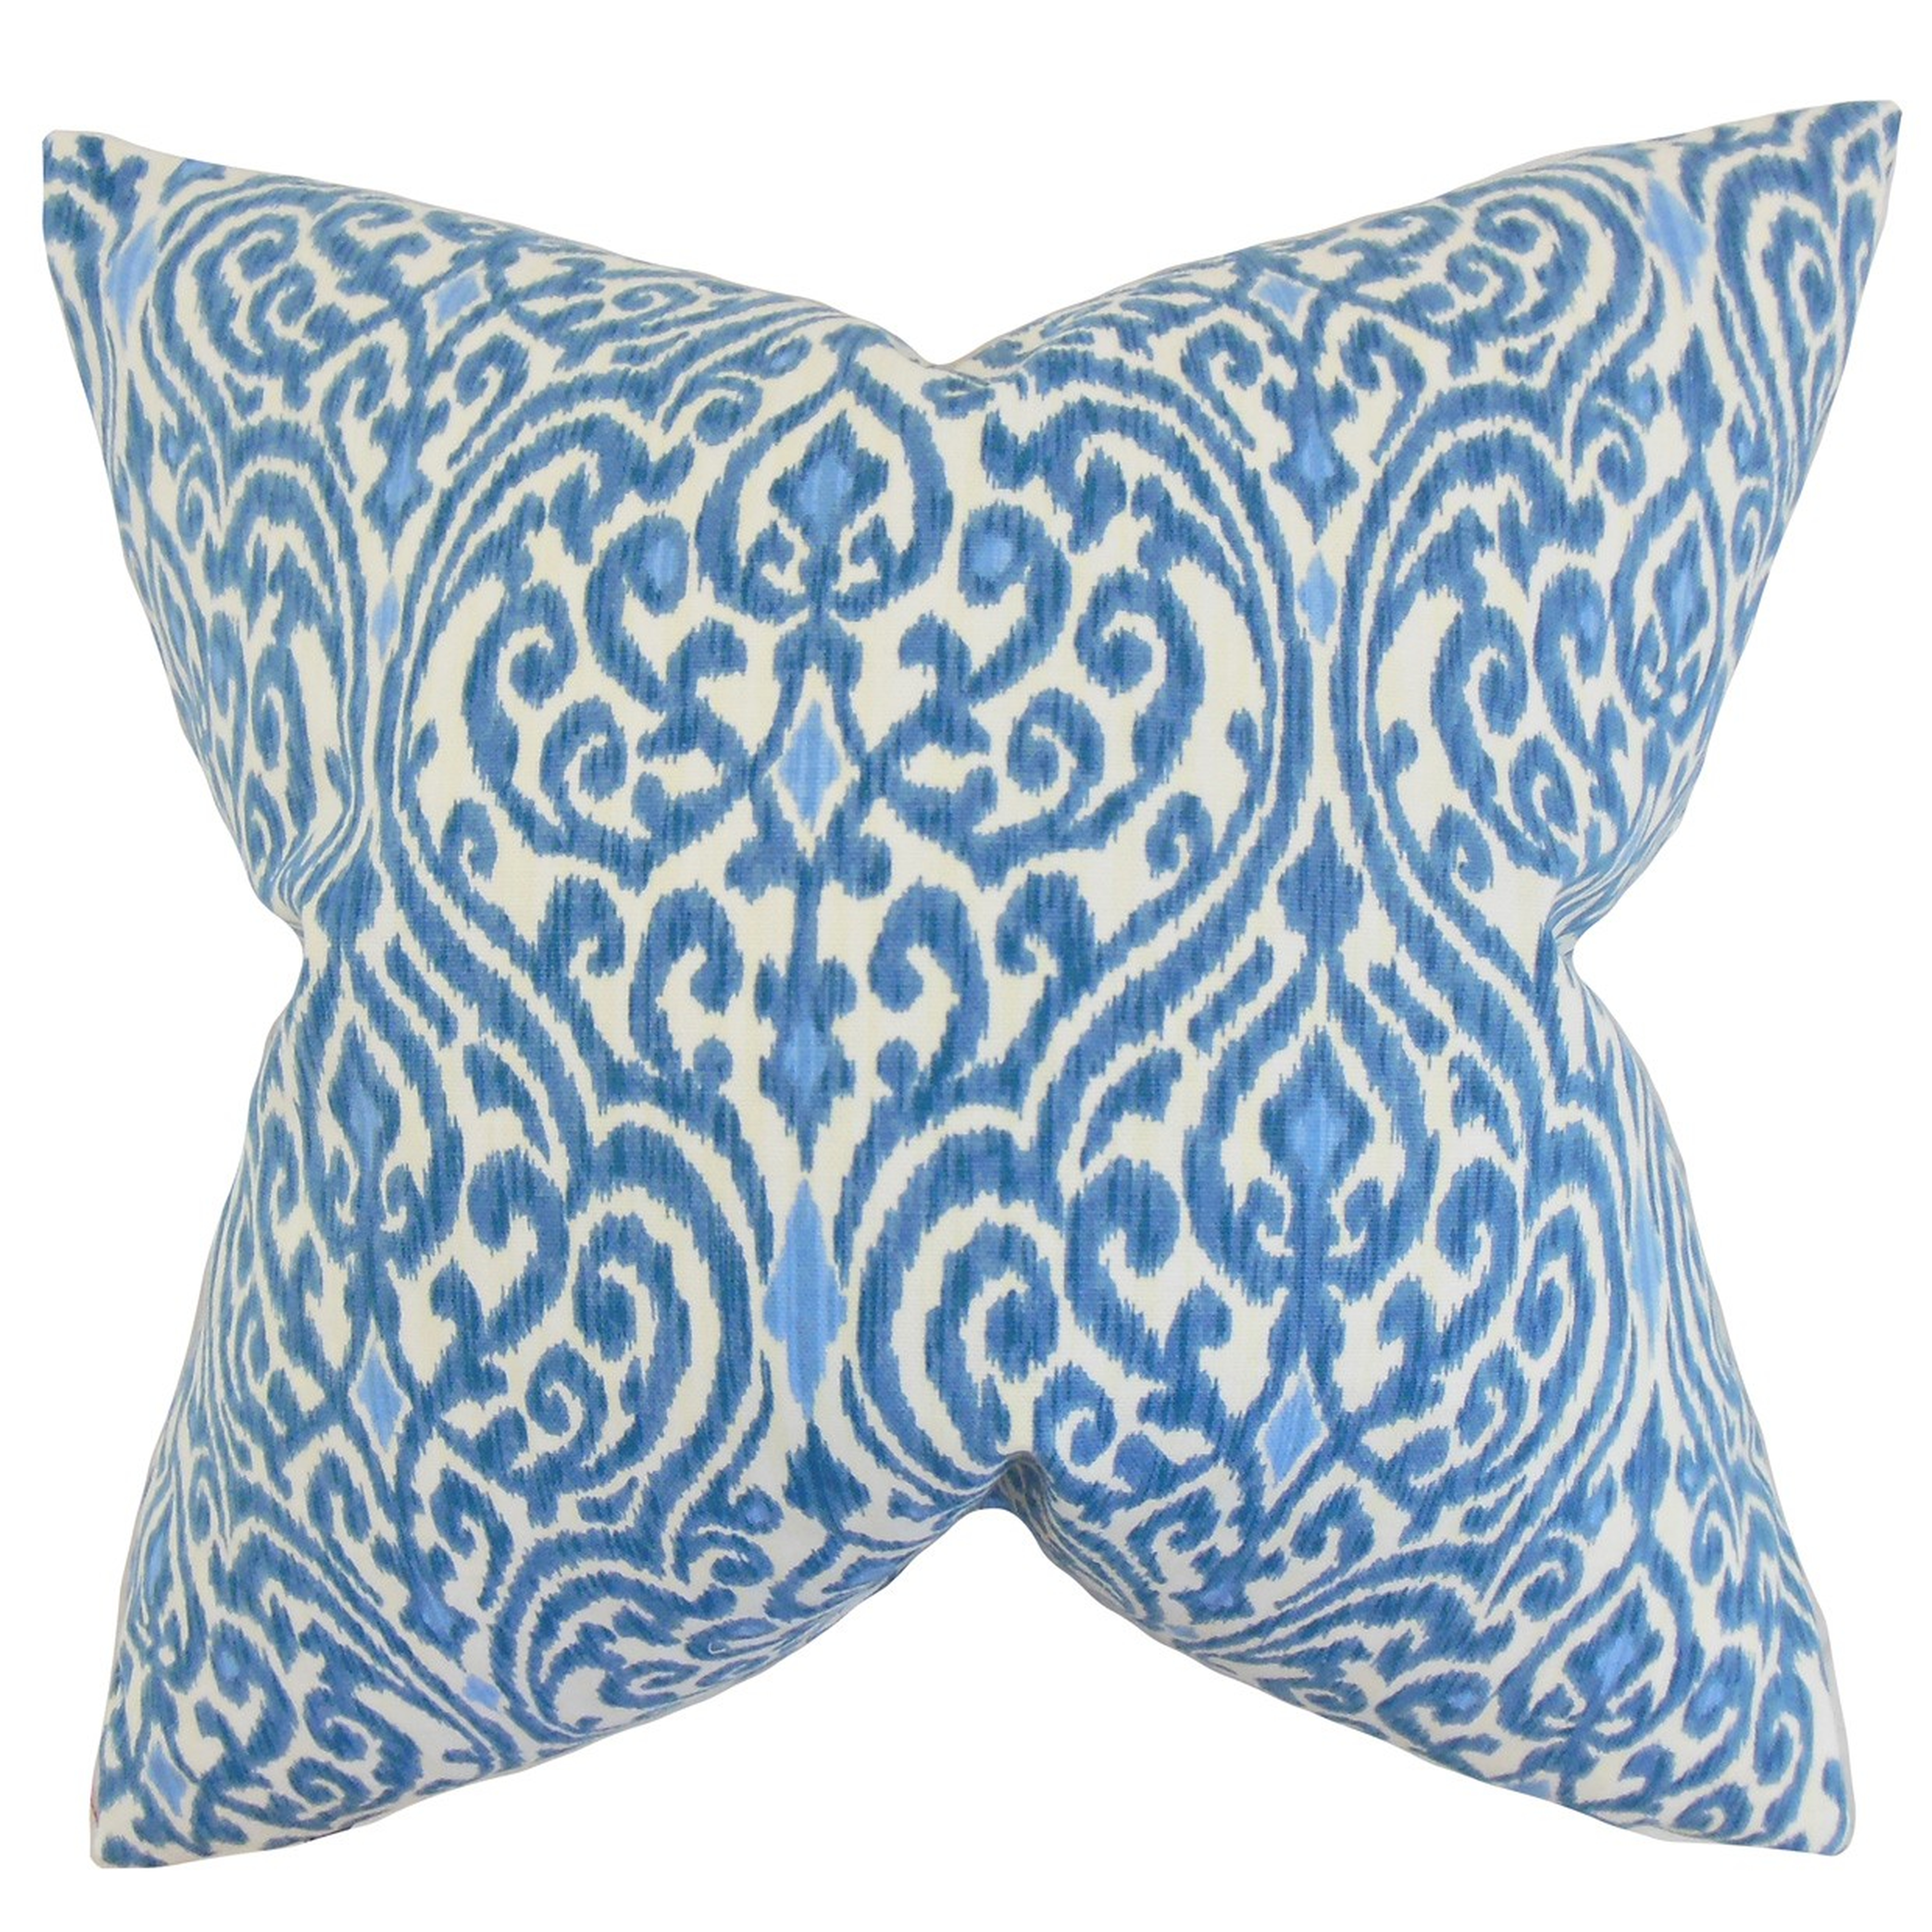 Ennis Ikat Pillow Blue - 18"x18" - with a high-fiber polyester pillow insert - Linen & Seam